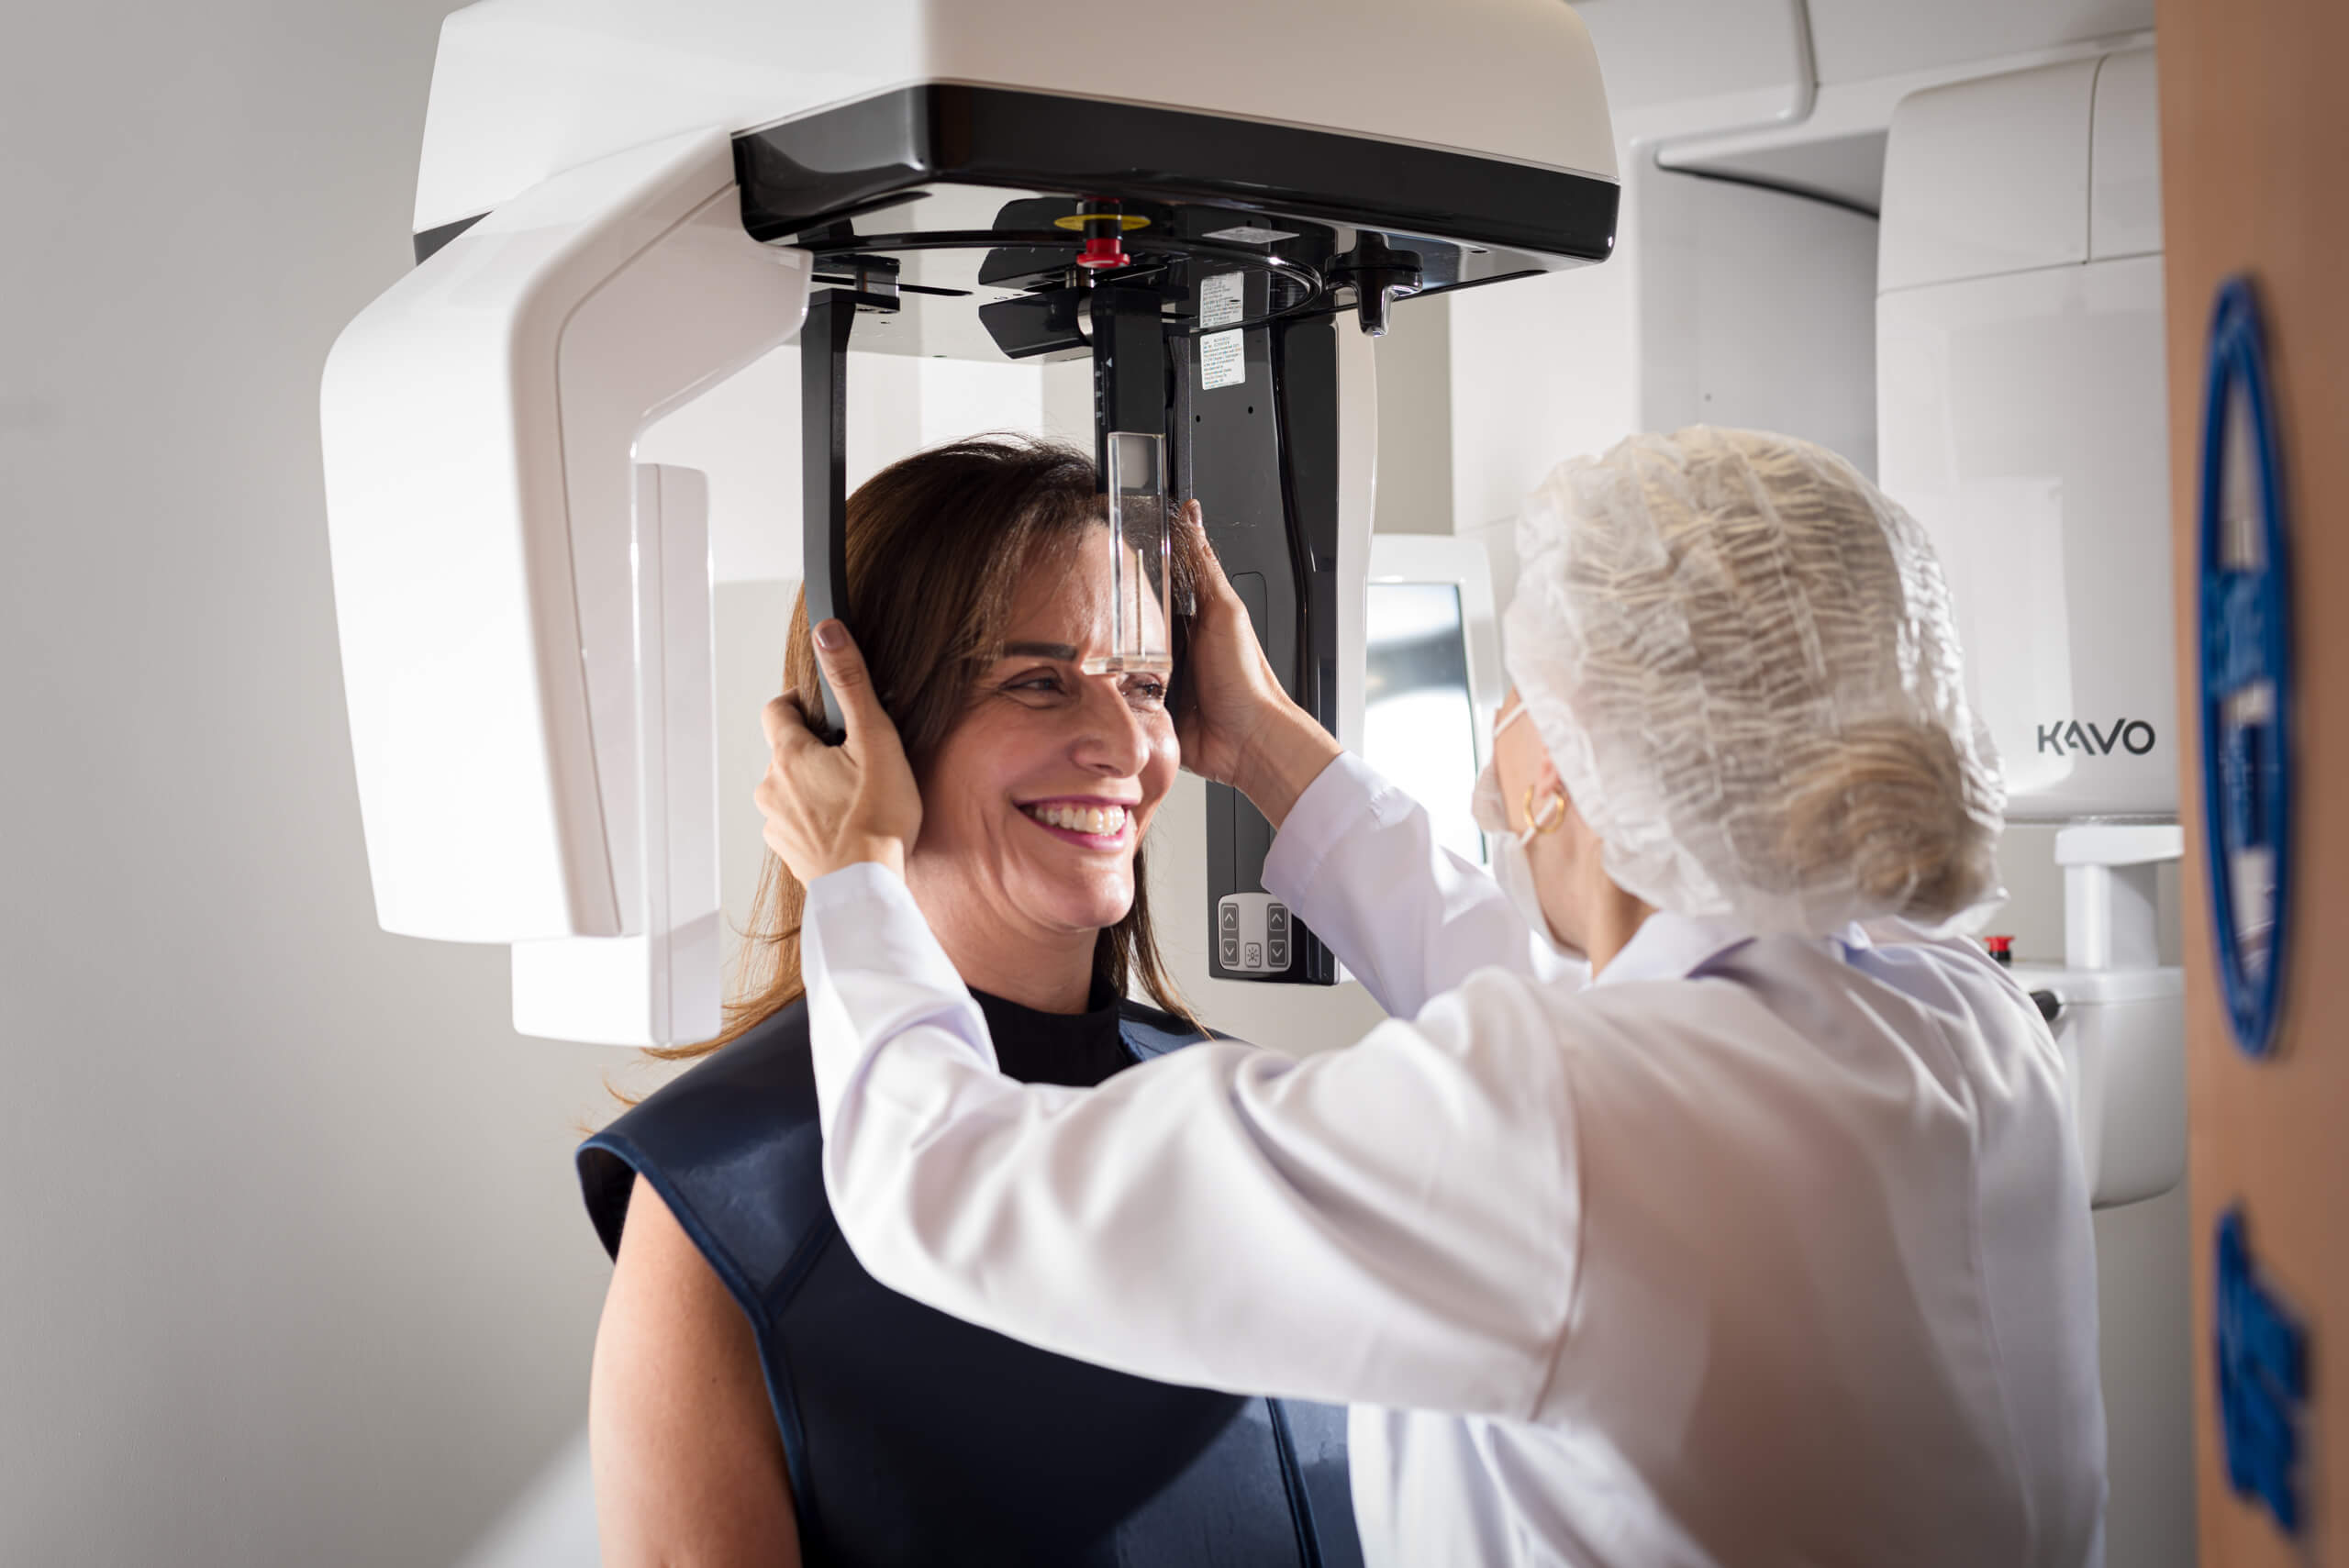 Um tomógrafo panorâmico é um equipamento de imagem médica que produz imagens tridimensionais da cabeça e do pescoço. É amplamente utilizado em odontologia para auxiliar no diagnóstico e tratamento de diversas condições.